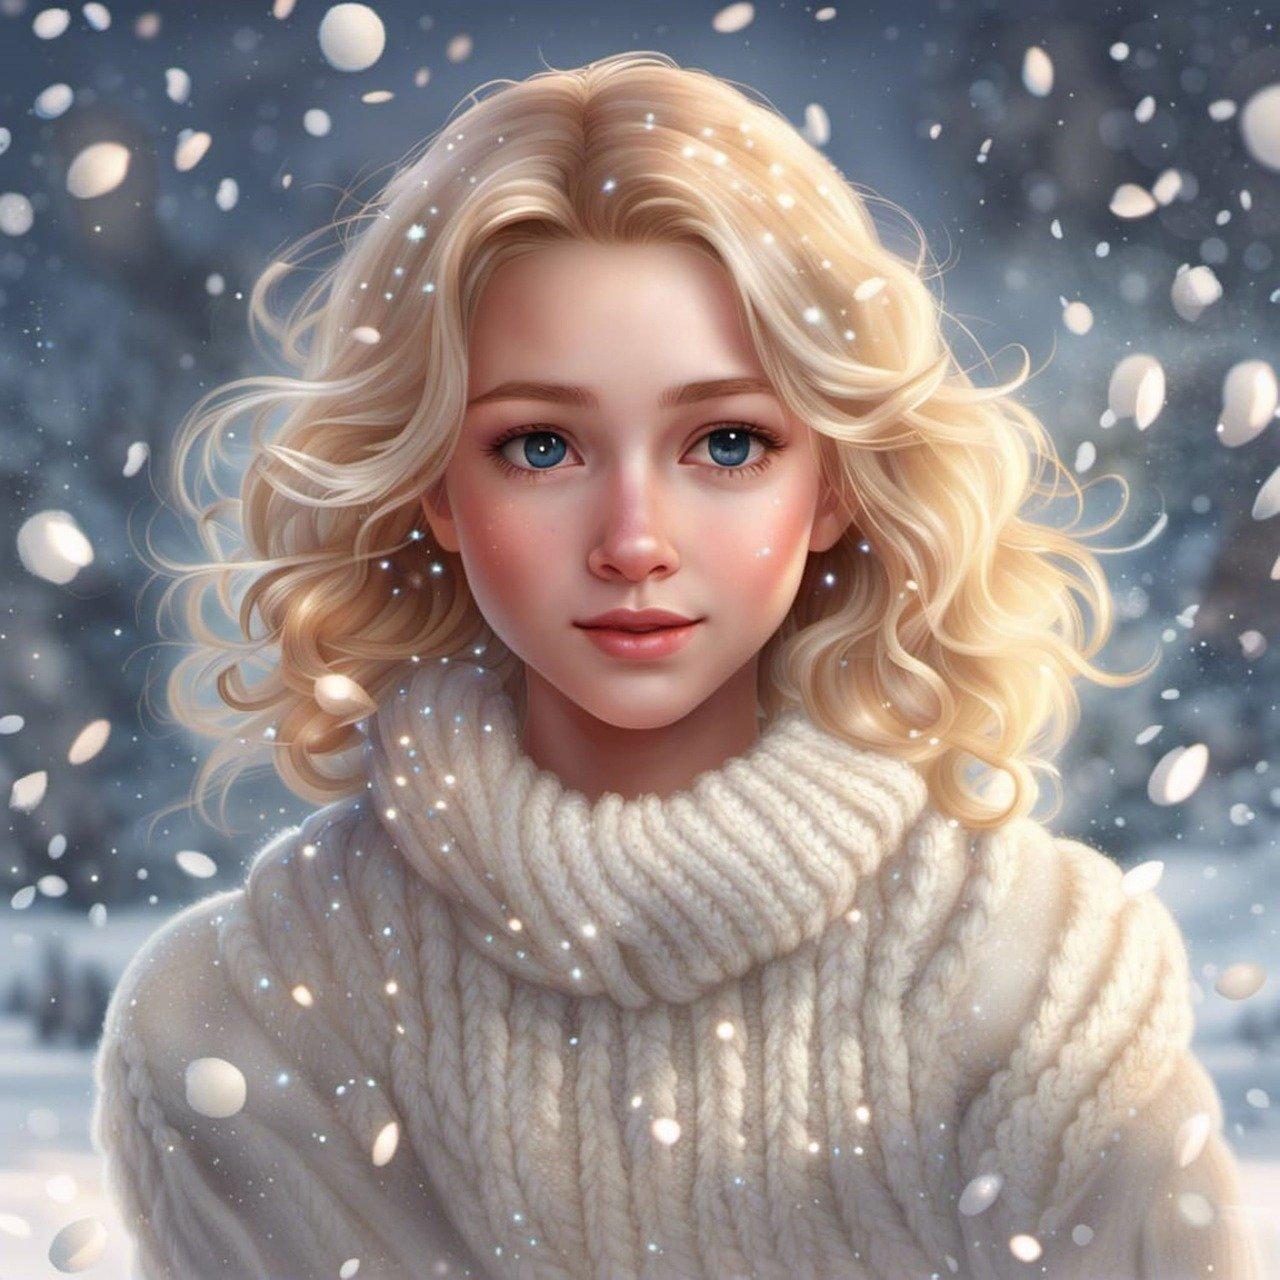 Созданный Ии Женщина Зима - Бесплатное изображение на Pixabay - Pixabay